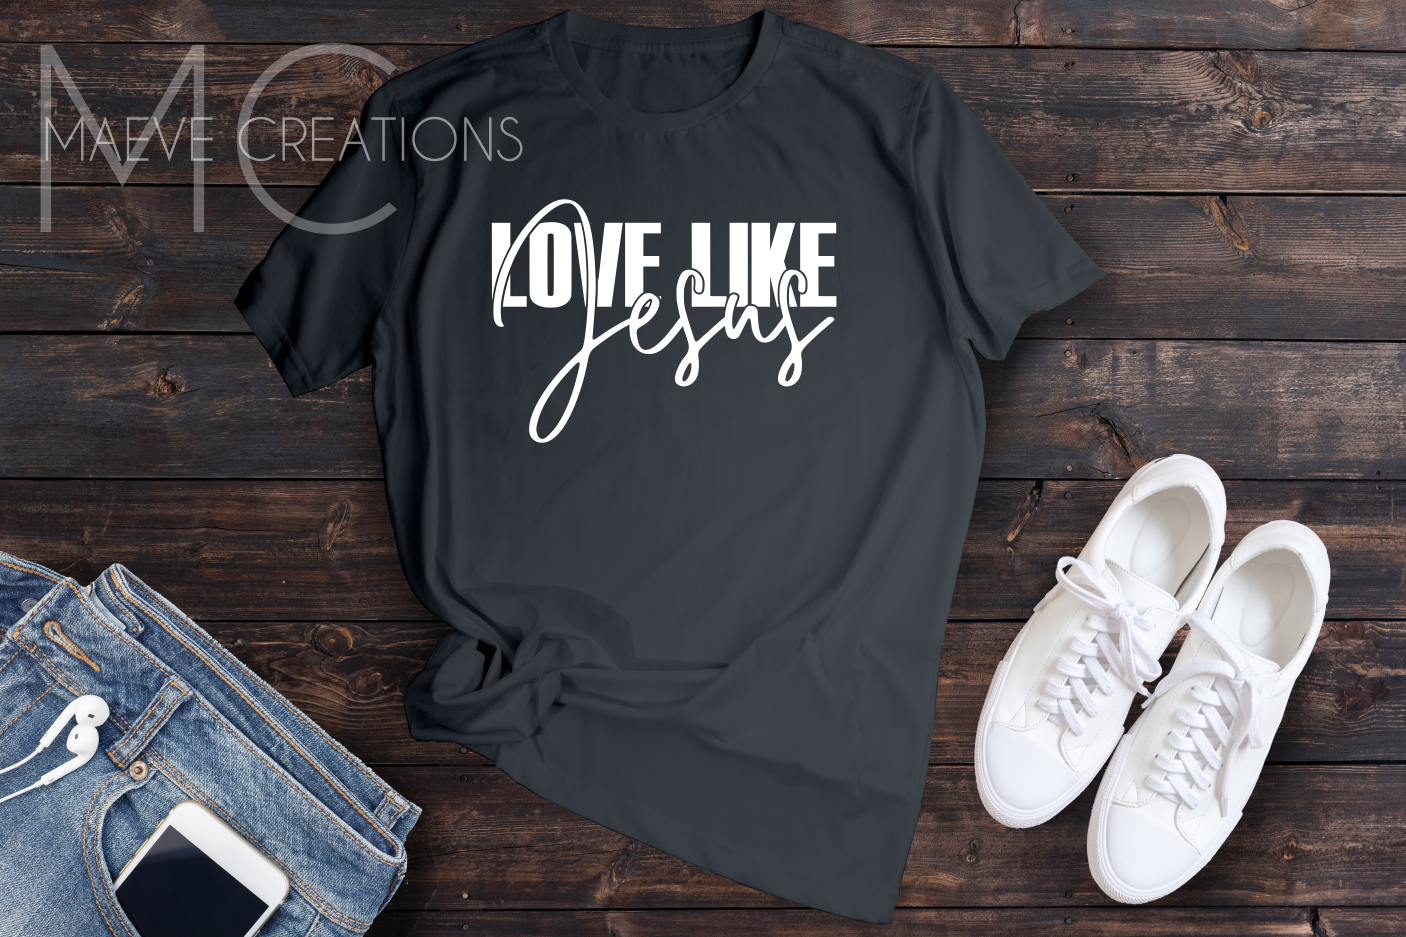 Love like Jesus tee